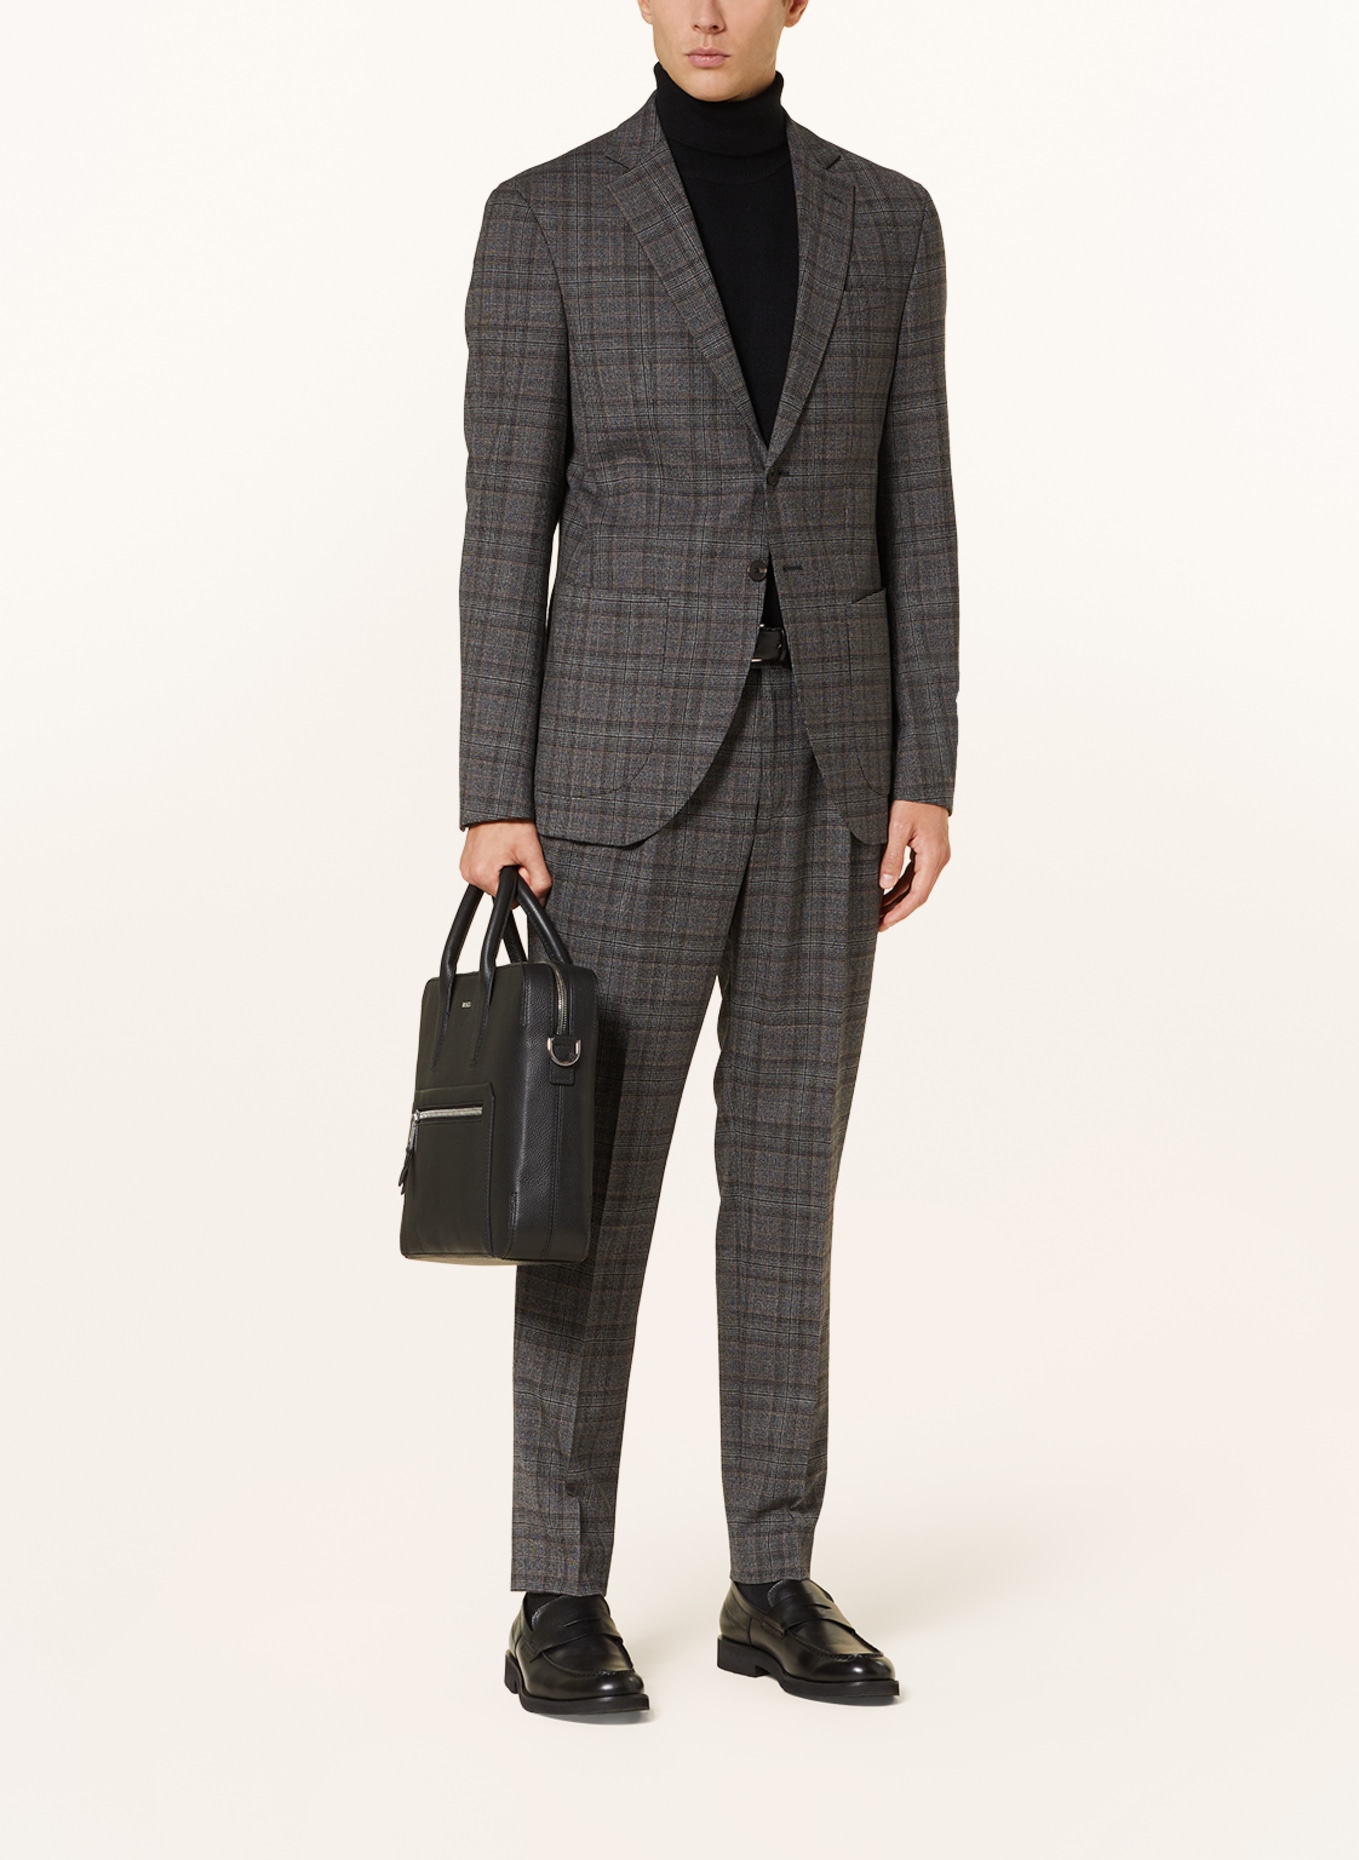 JOOP! Suit jacket DASH extra slim fit, Color: 030 Medium Grey                030 (Image 2)